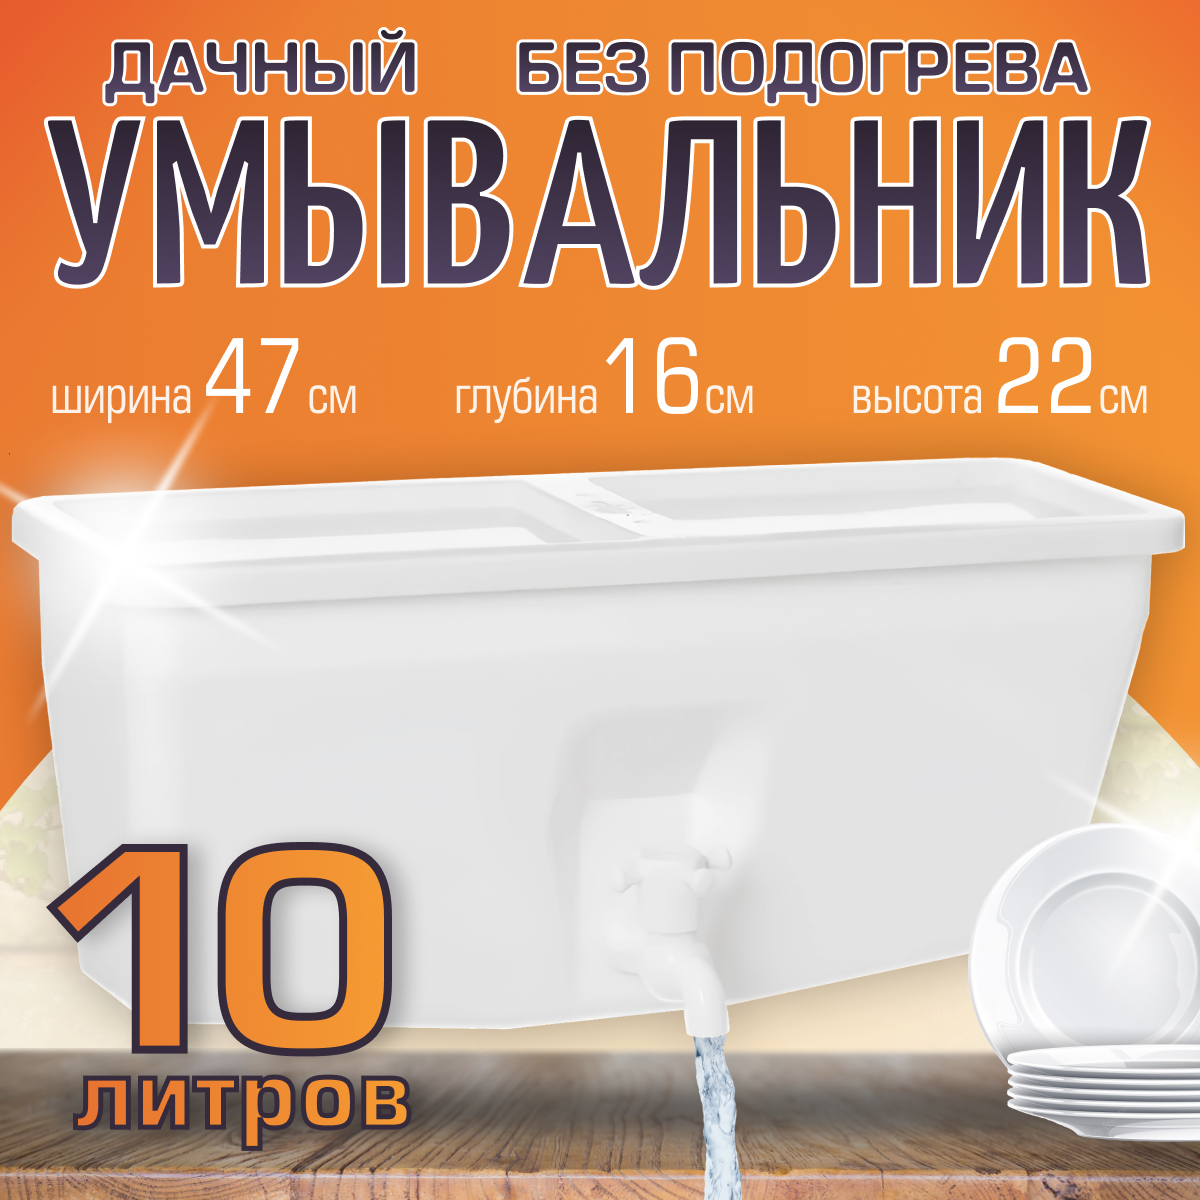 Рукомойник ЭлБэт УМ-10 020313 10 литров